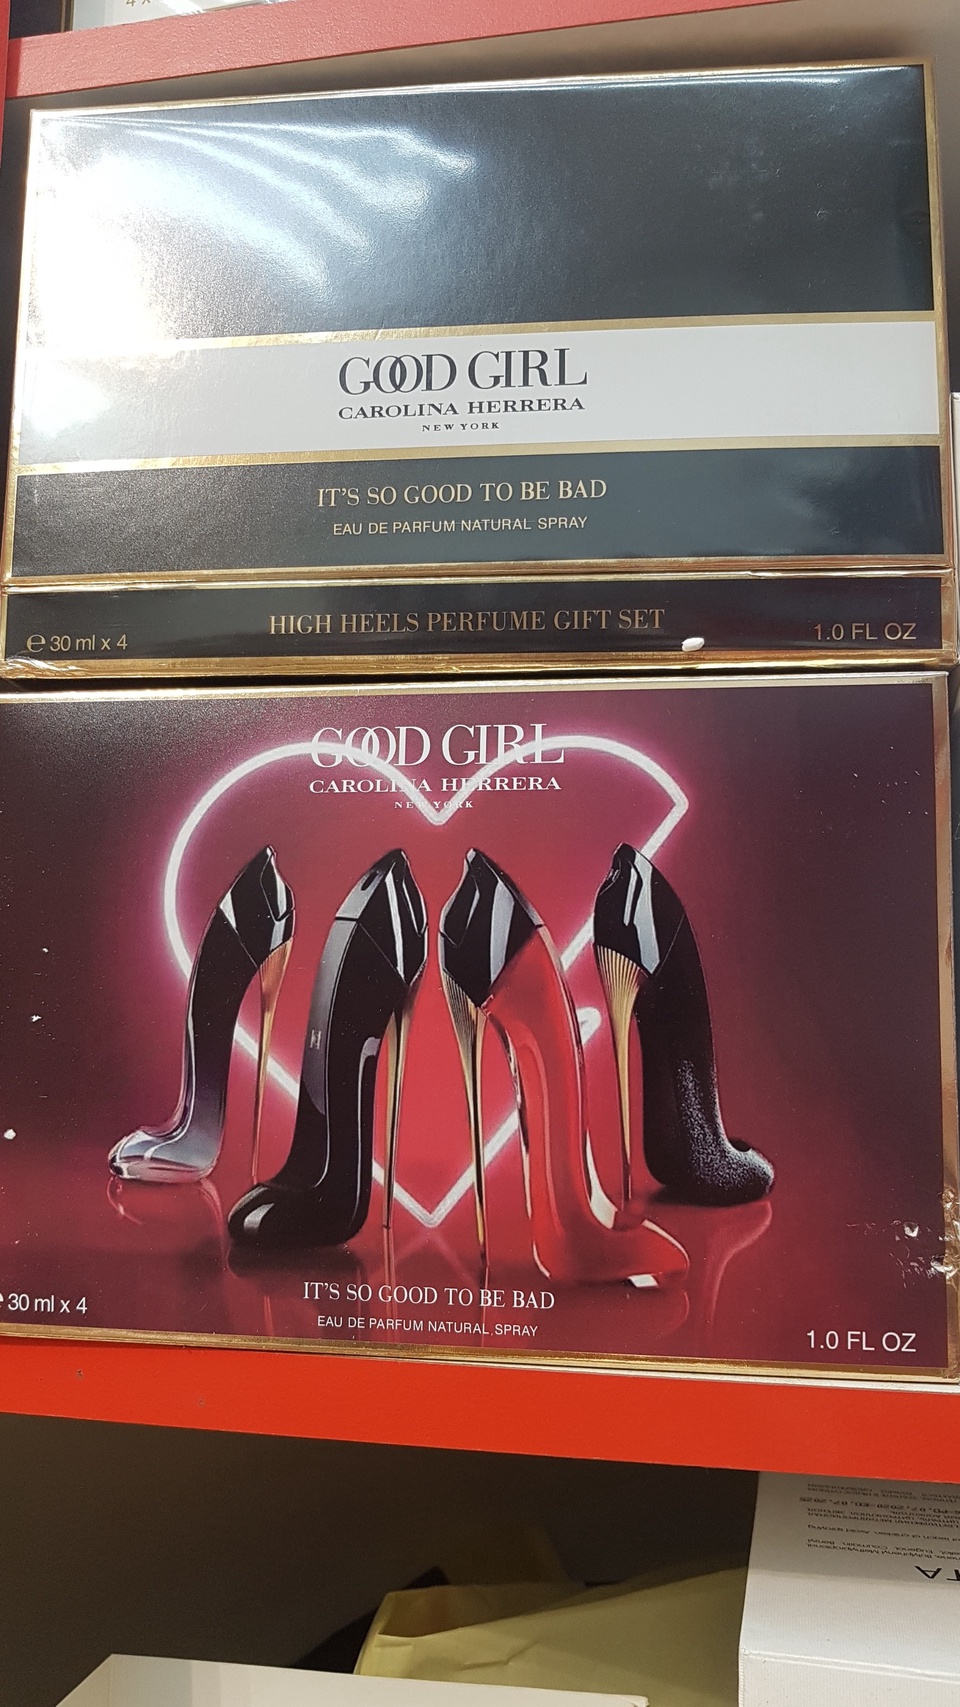 Парфюмированный набор для женщин, 4 разных аромата по 30 мл - 1 900 ₽, заказать онлайн.